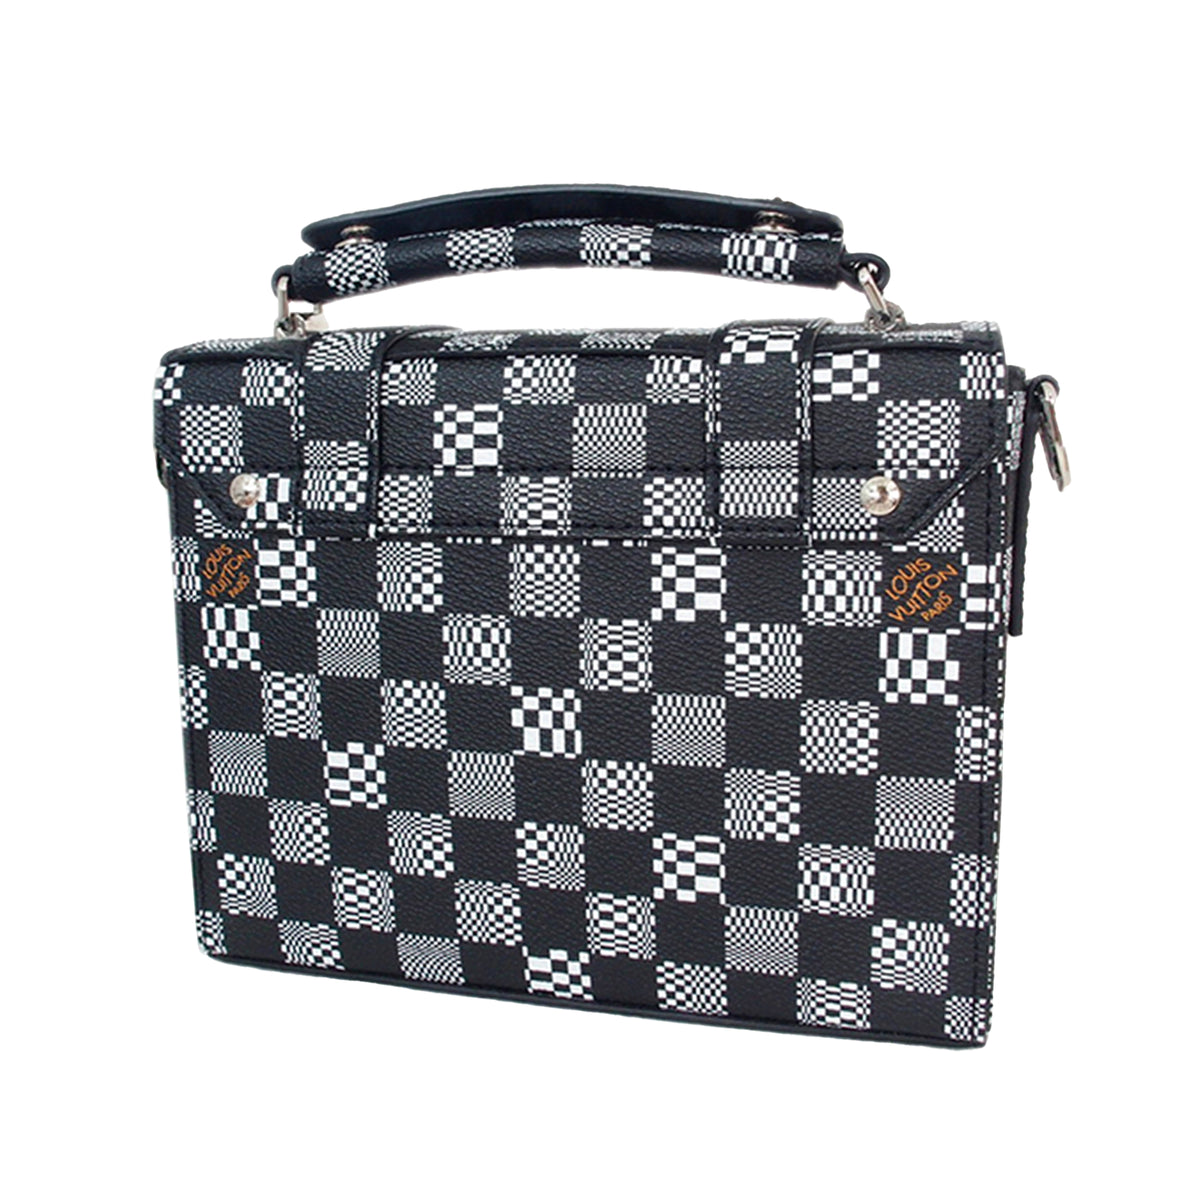 LOUIS VUITTON Shoulder Bag Flap crossbody Musette Damier canvas N51302 –  Japan second hand luxury bags online supplier Arigatou Share Japan